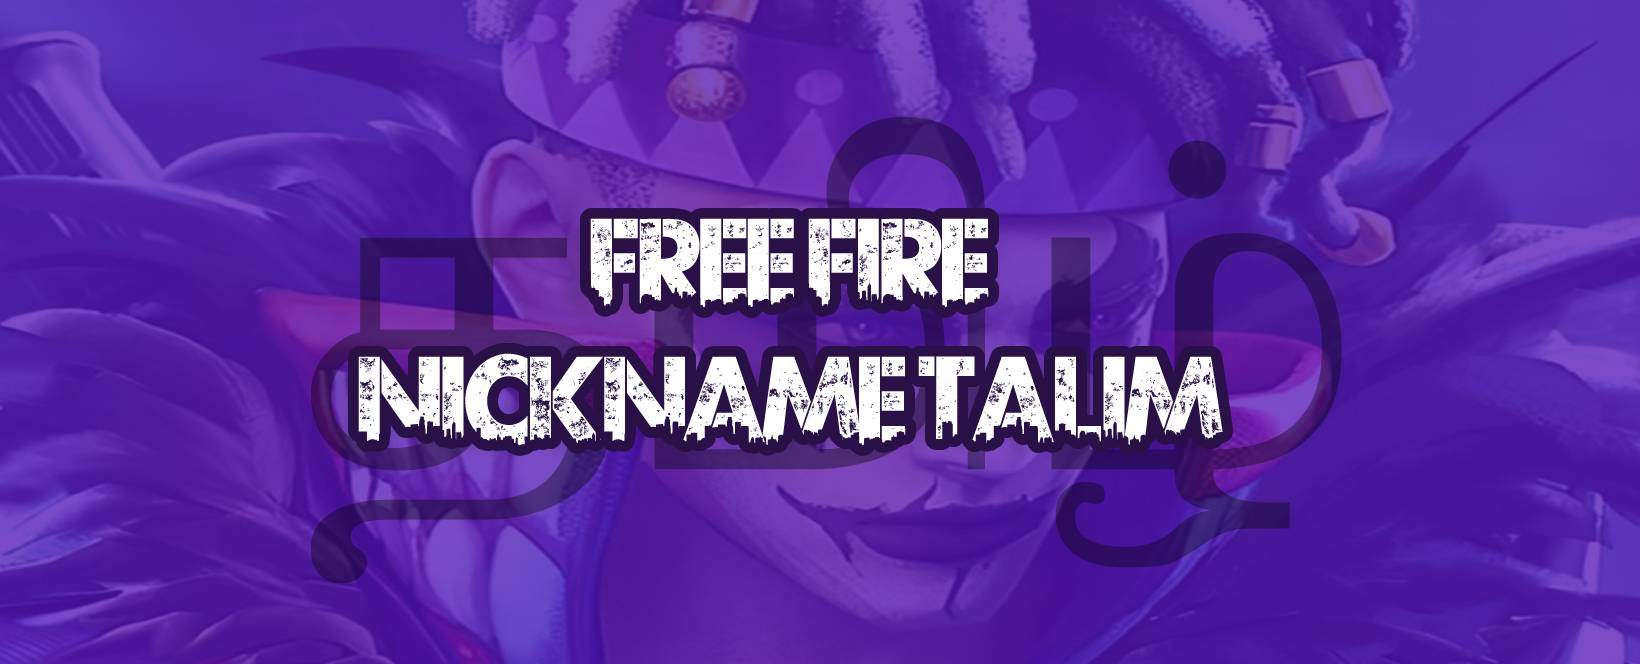 Free Fire nickname tamil – names in tamil